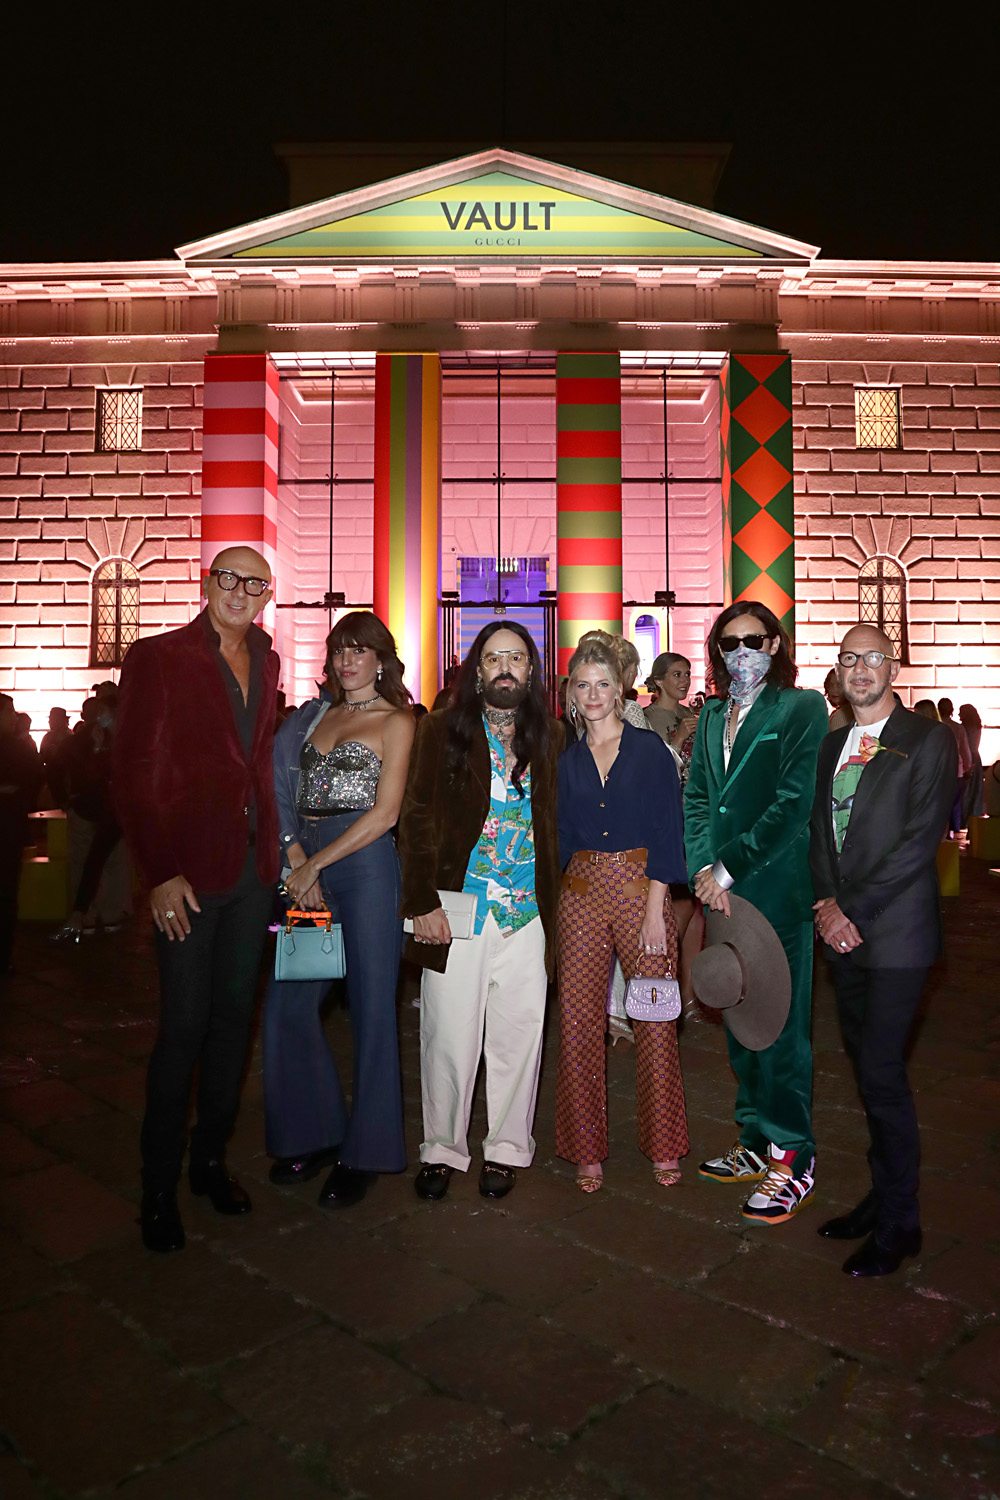 Marco Bizzarri, Lou Doillon, Alessandro Michele, Mélanie Laurent, Jared Leto  à la soirée Gucci Vault à Milan